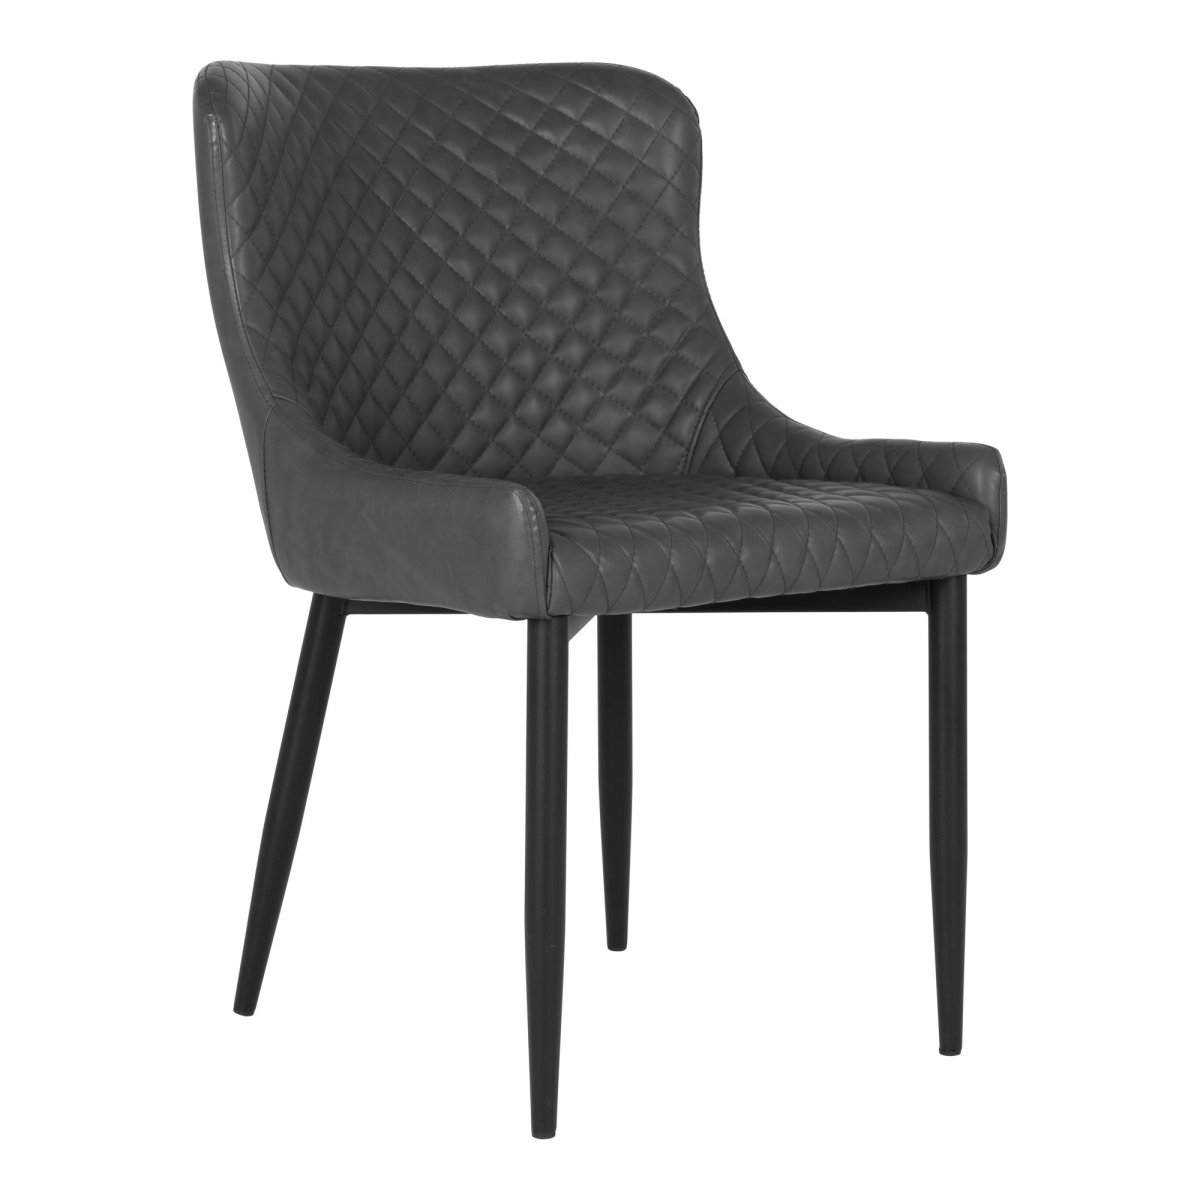 Chaise moderne en simili cuir avec accoudoirs gris